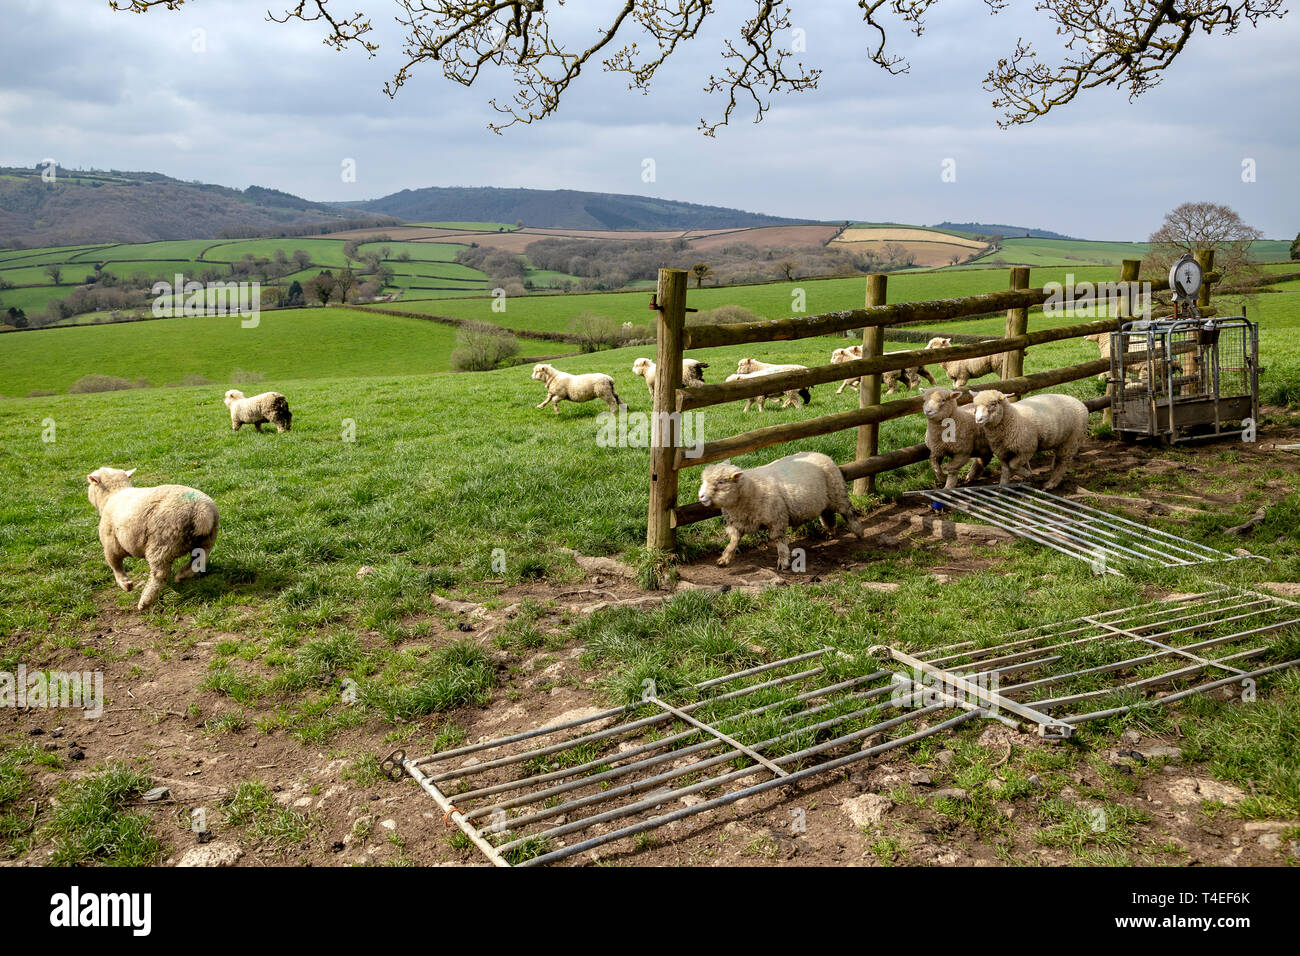 Agneaux dans le Devon, domaine agricole, l'Agriculture, de l'Angleterre, l'anglais, la culture, le Parc National d'Exmoor, ferme, de la liberté, de l'herbe, pâturage, l'élevage, Mam Banque D'Images